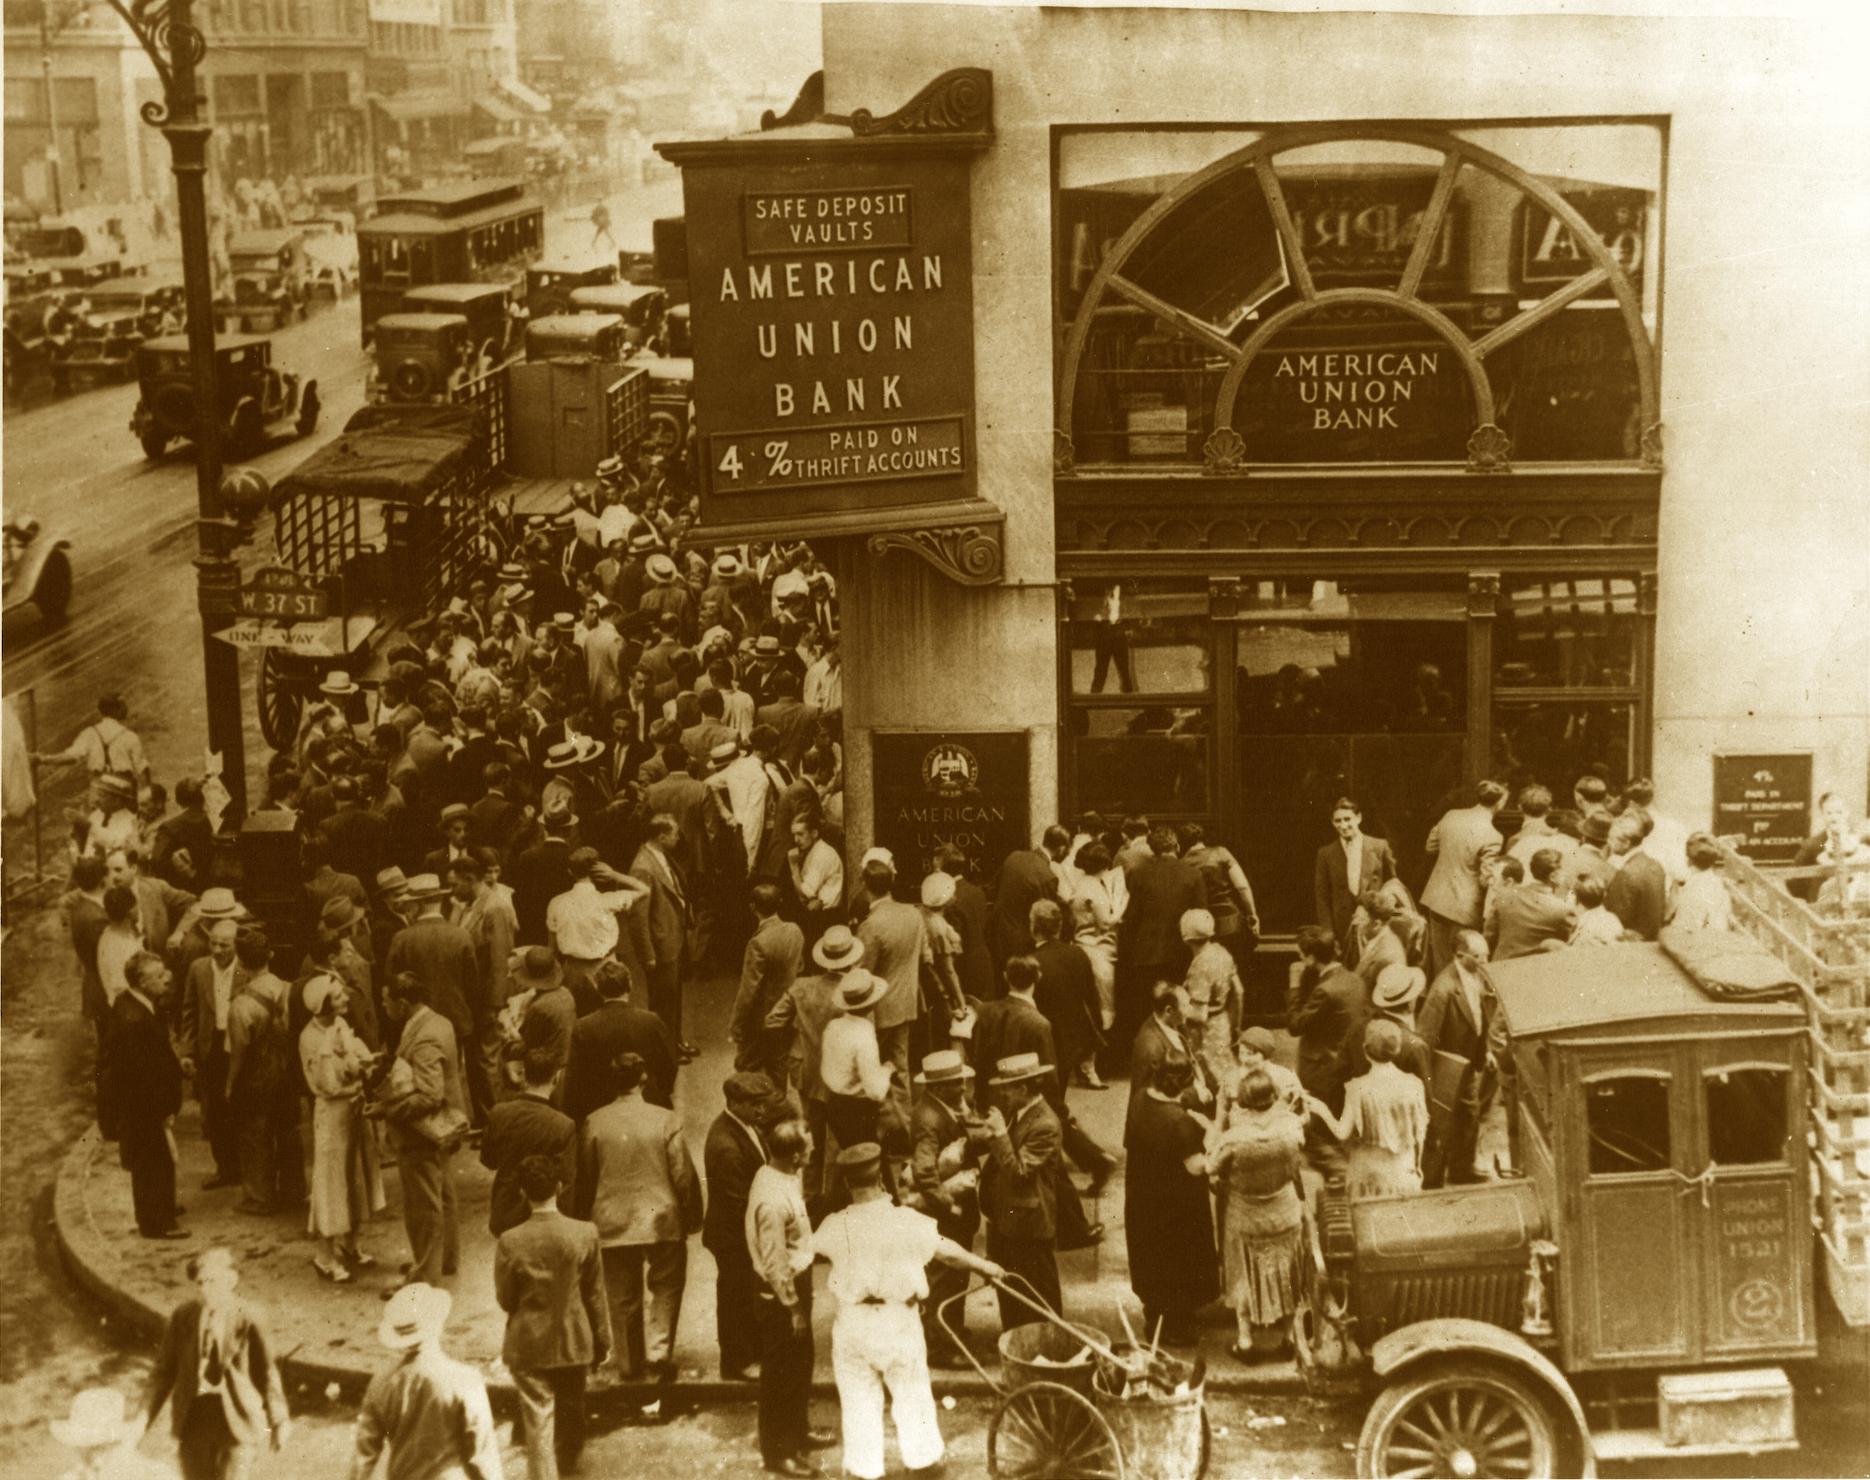 Bank Run on American Union Bank in 1929